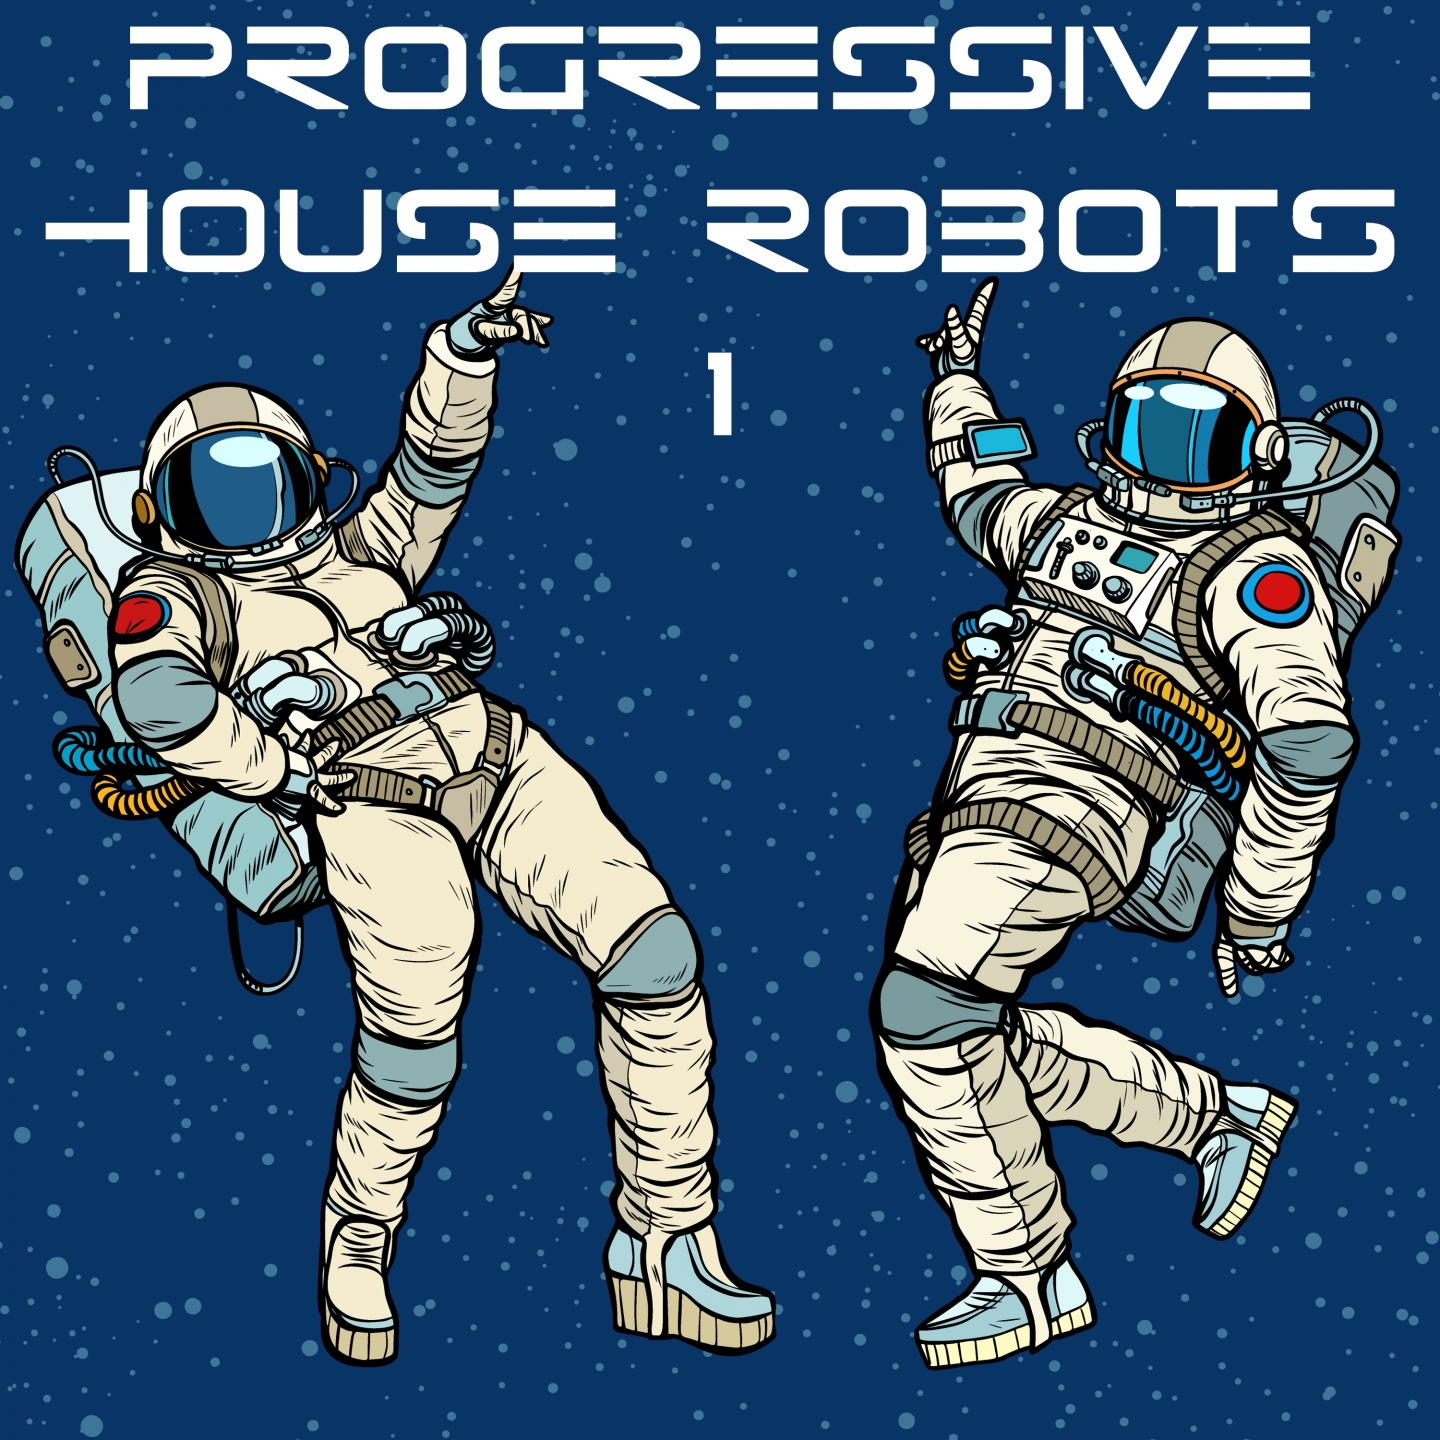 Progressive House Robots, Vol. 1